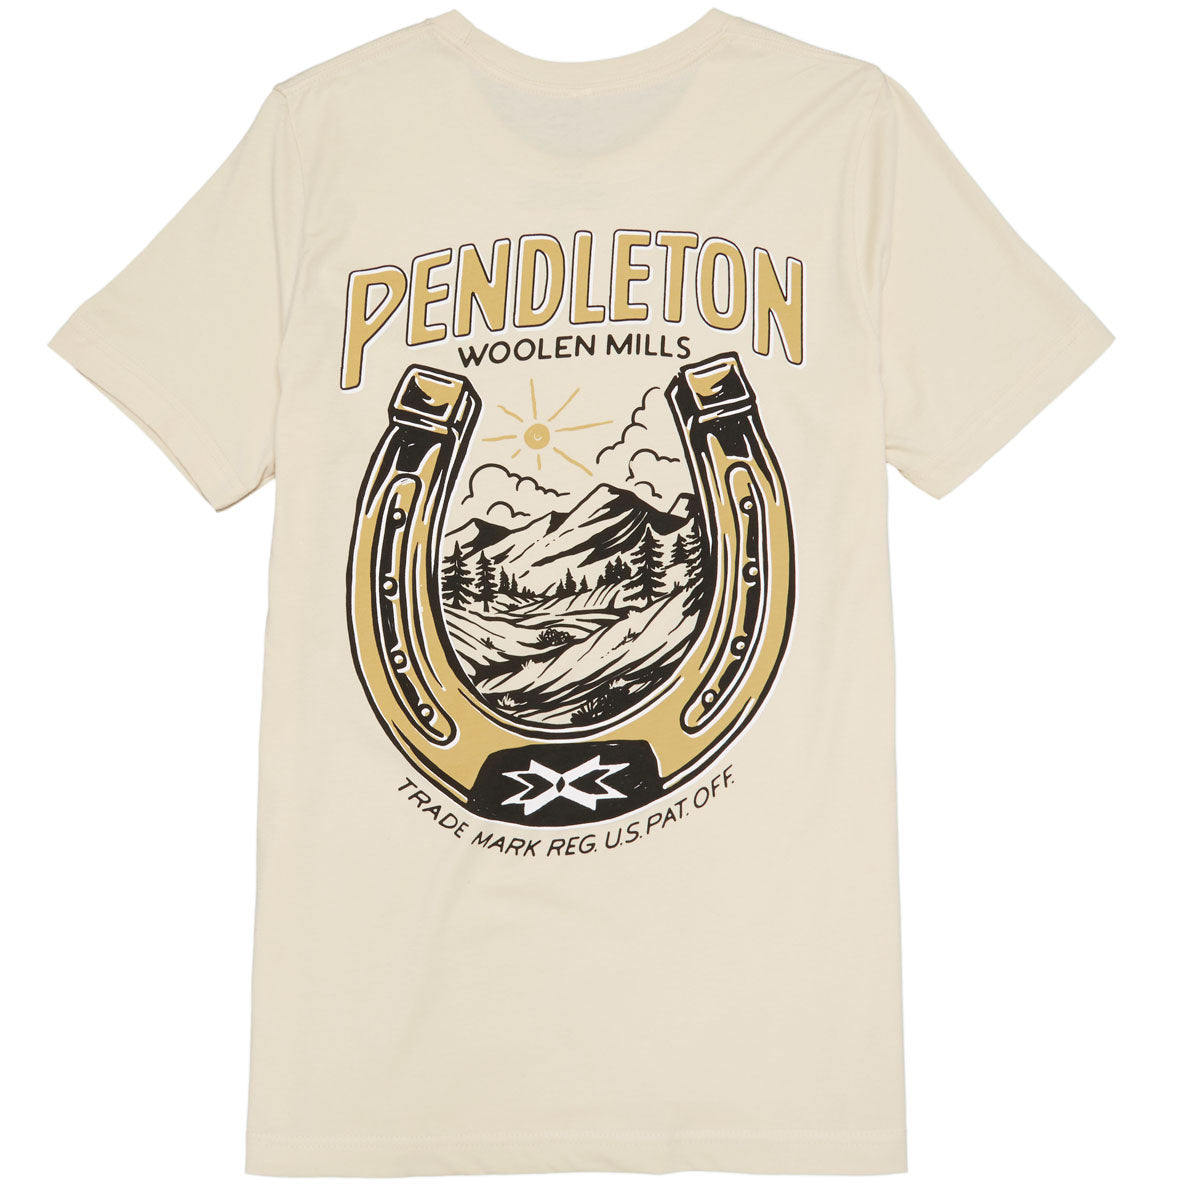 Pendleton Vintage Horseshoe T-Shirt - Soft Cream/Gold image 1